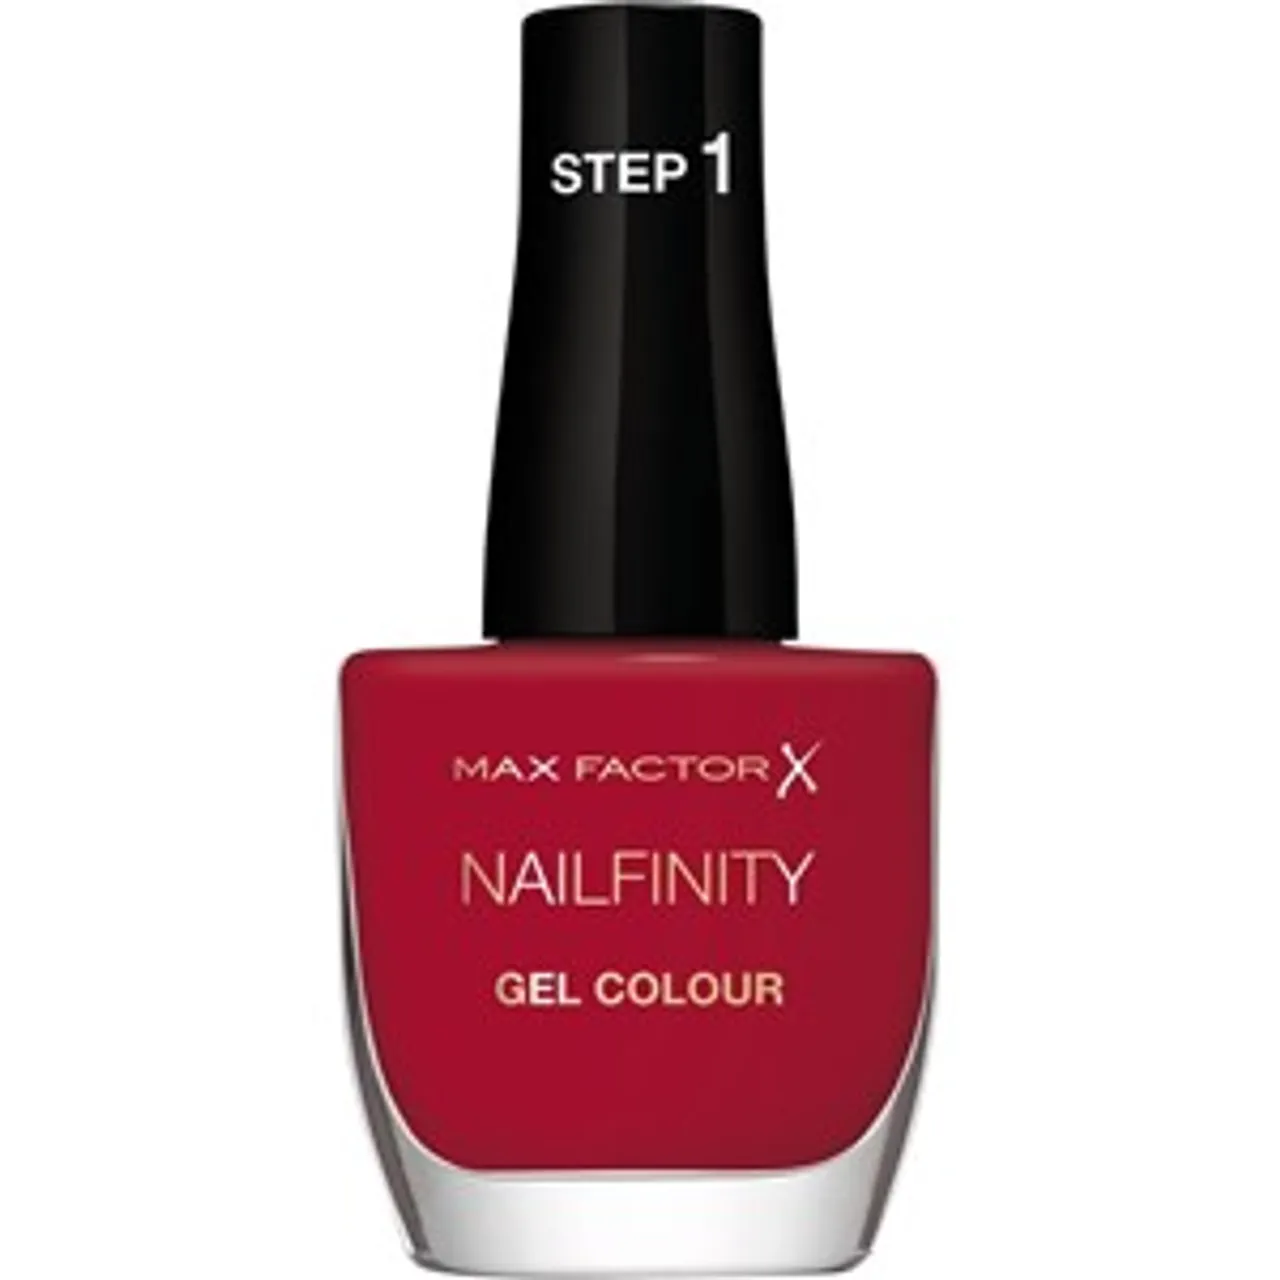 Max Factor Nailfinity Nail Gel Colour Female 12 ml